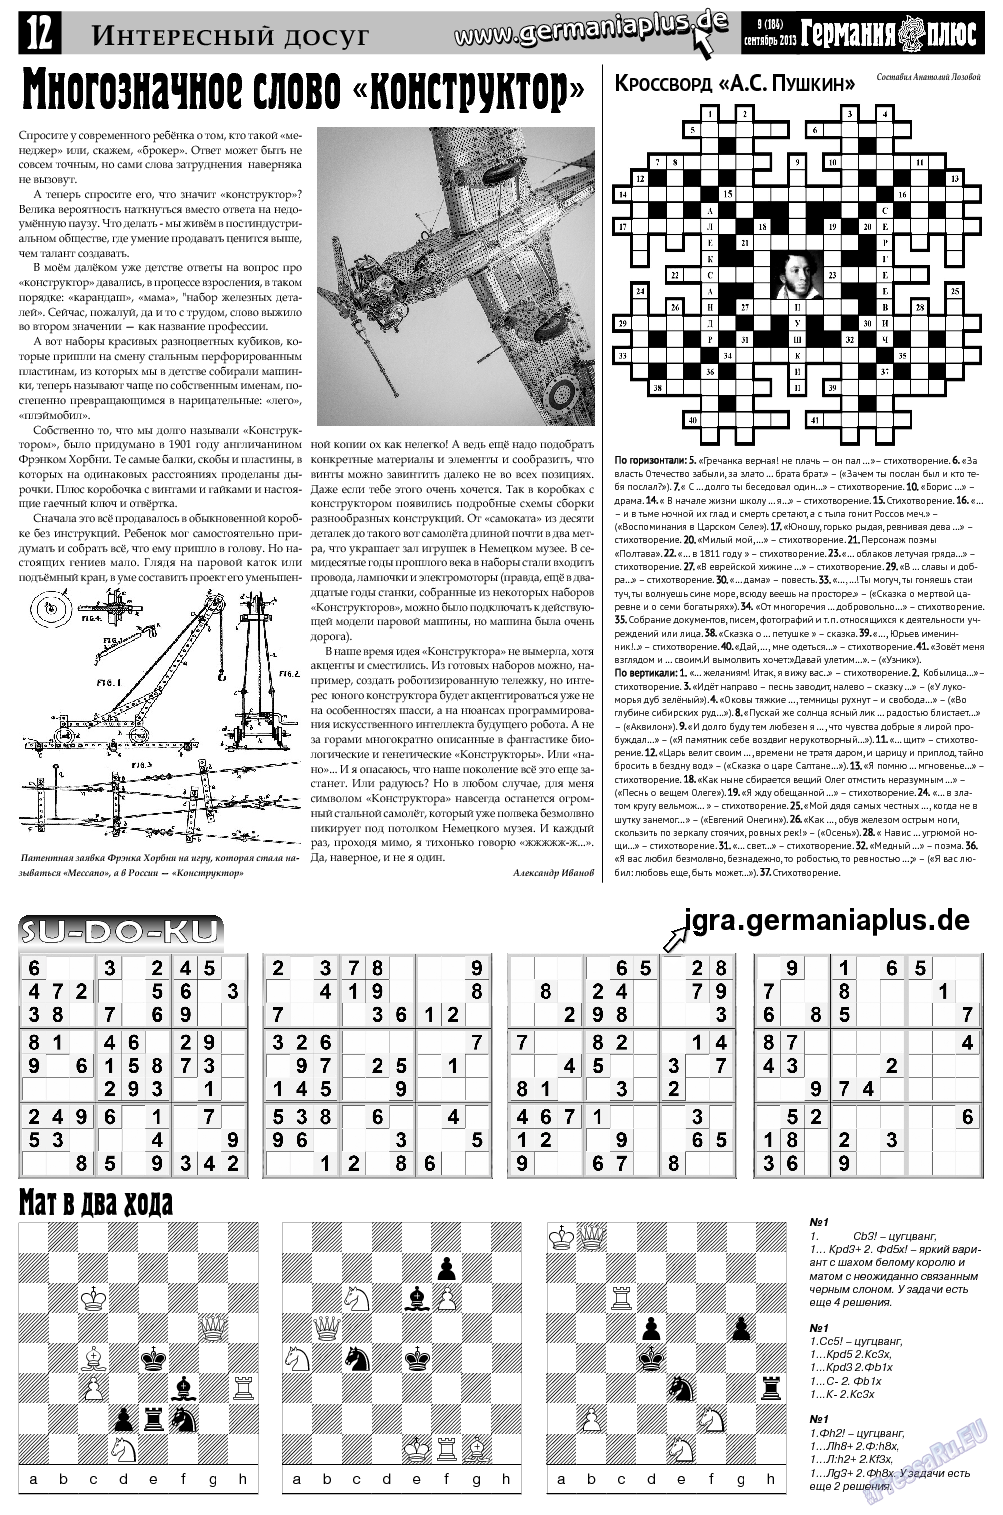 Германия плюс, газета. 2013 №9 стр.12